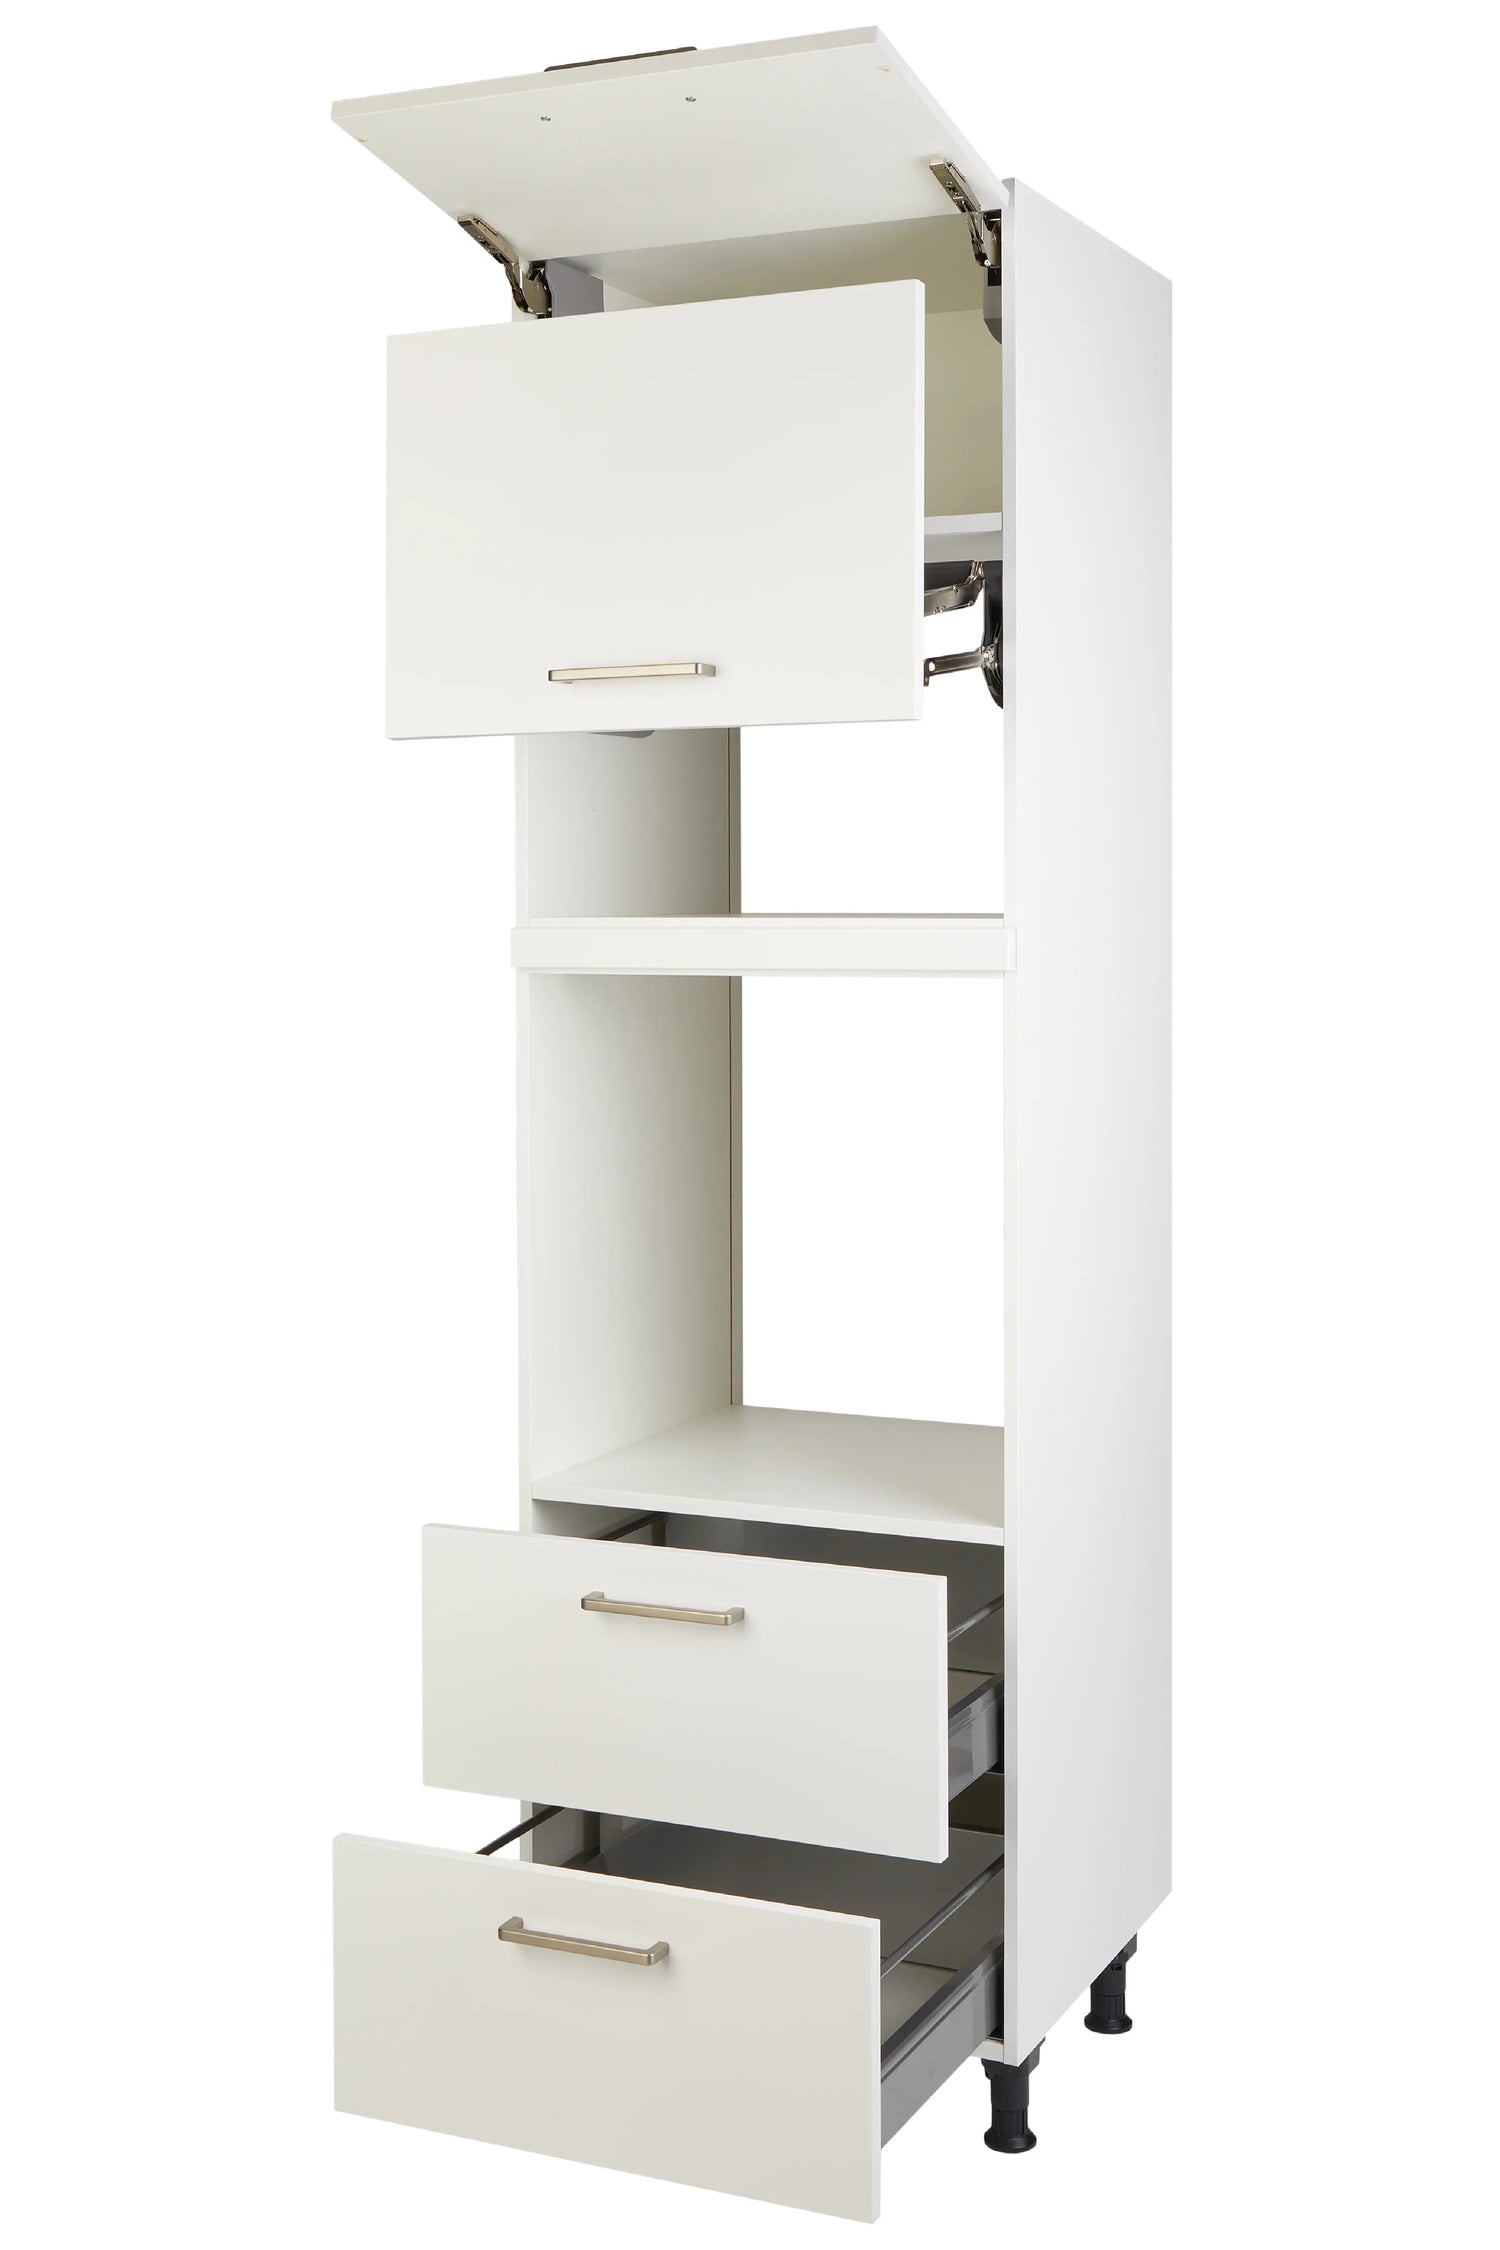 Geräte-Umbau für Backofen mit Lifttür für Mikrowelle, Klappe und Auszügen, Alpinweiss supermatt GLO2A1 nobilia Küchenschränke